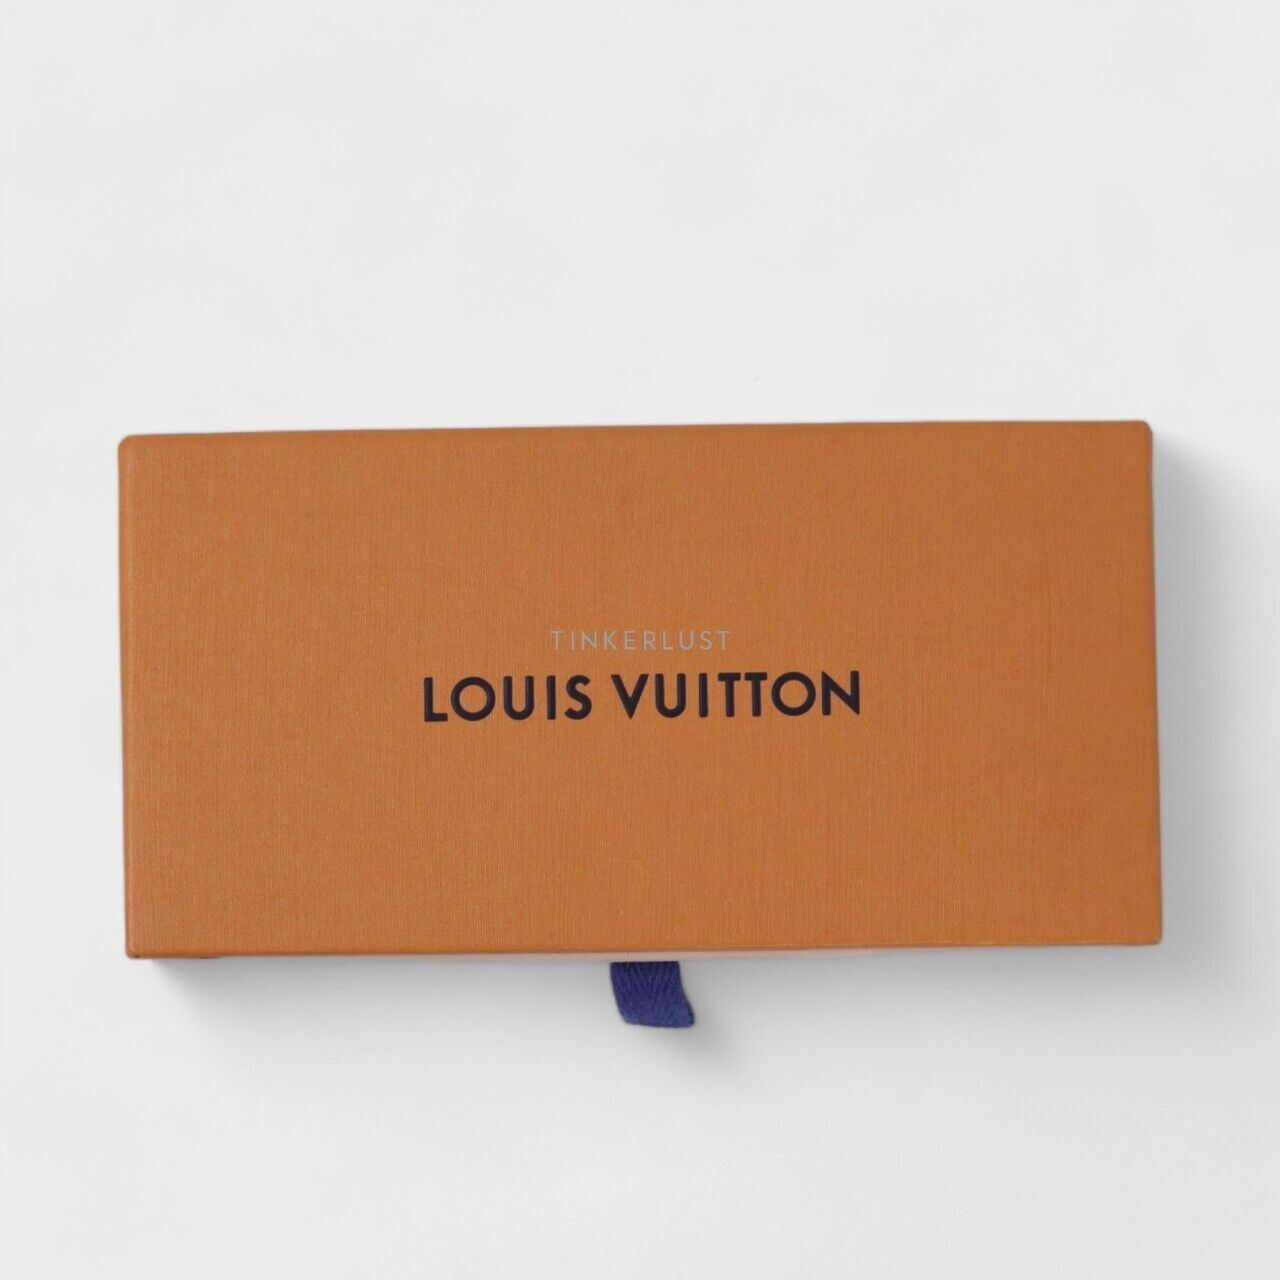 Louis Vuitton Monogram Confidental Bandeau Scarf